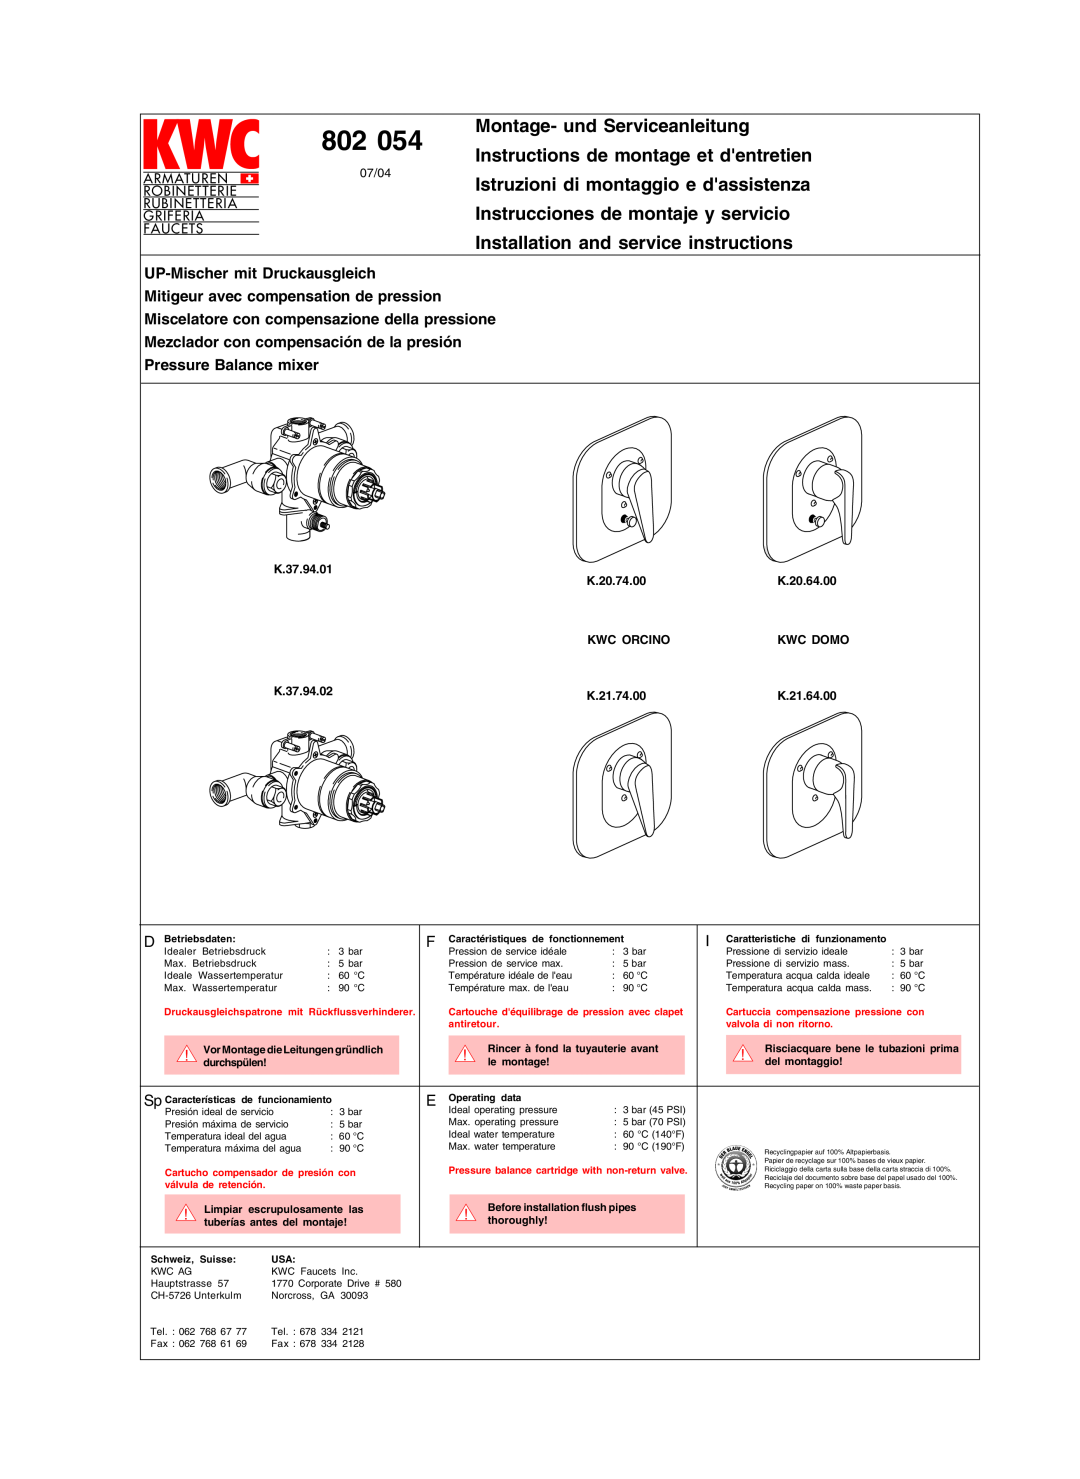 KWC 802 054 manual Montage- und Serviceanleitung, Instructions de montage et dentretien, Armaturen, Robinetterie, Griferia 